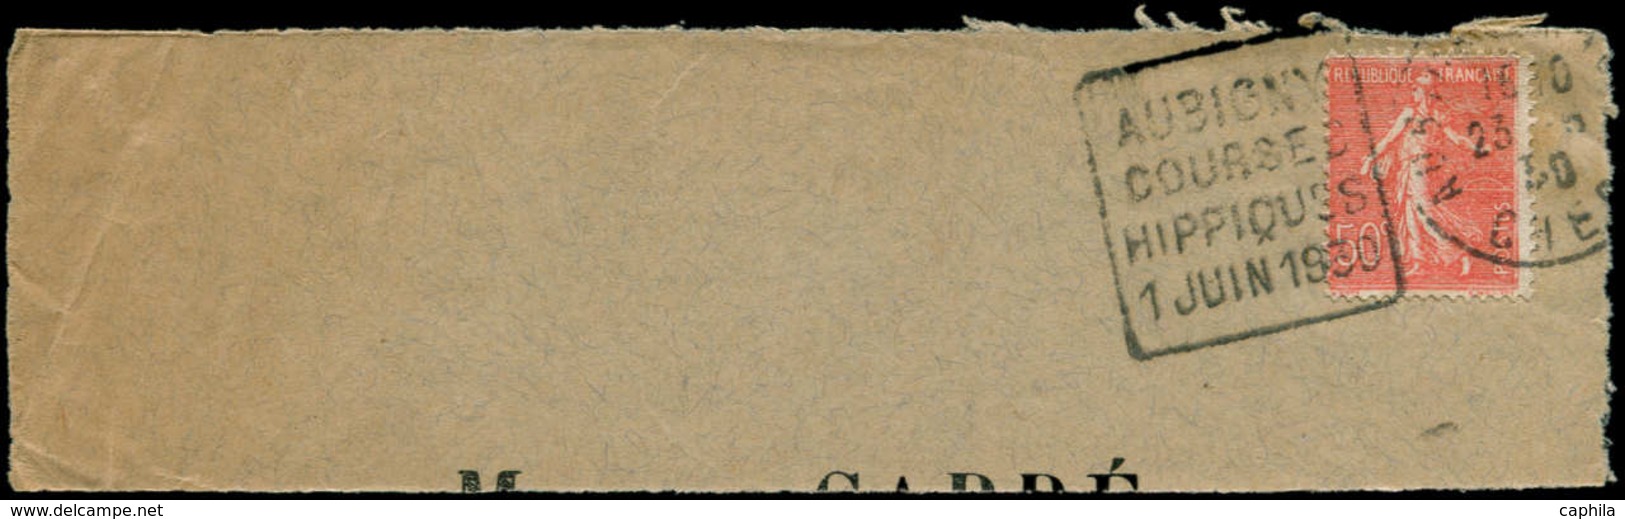 Chevaux - Poste - France, Enveloppe (fragment), Daguin:" Aubigny Courses Hippiques 1 Juin 1930" - Chevaux